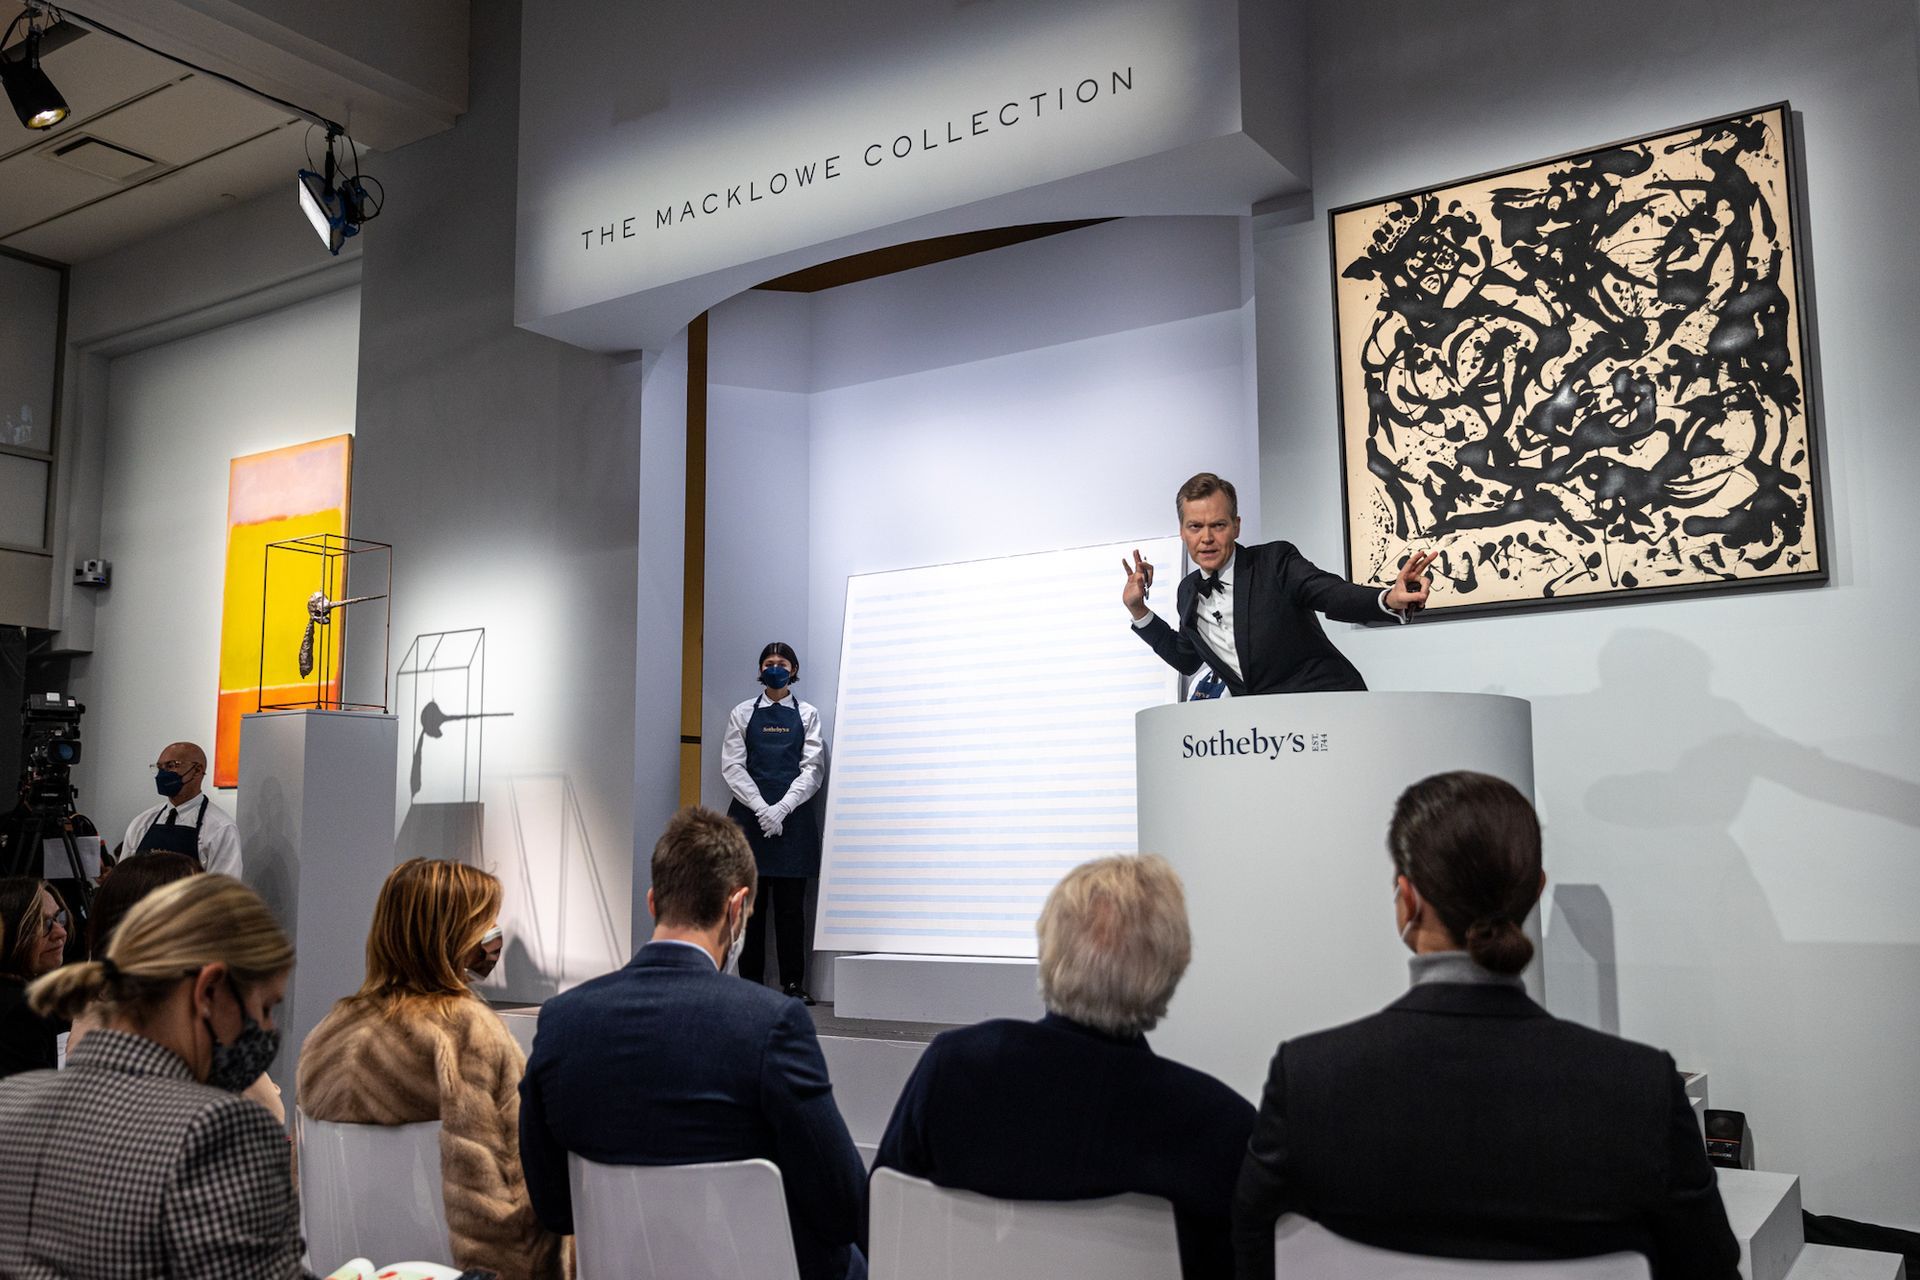 אוליבר בארקר עורך את המכירה הראשונה של אוסף מקלאו בסותבי'ס ניו יורק ב-15 בנובמבר 2021

תמונה באדיבות סותבי'ס


